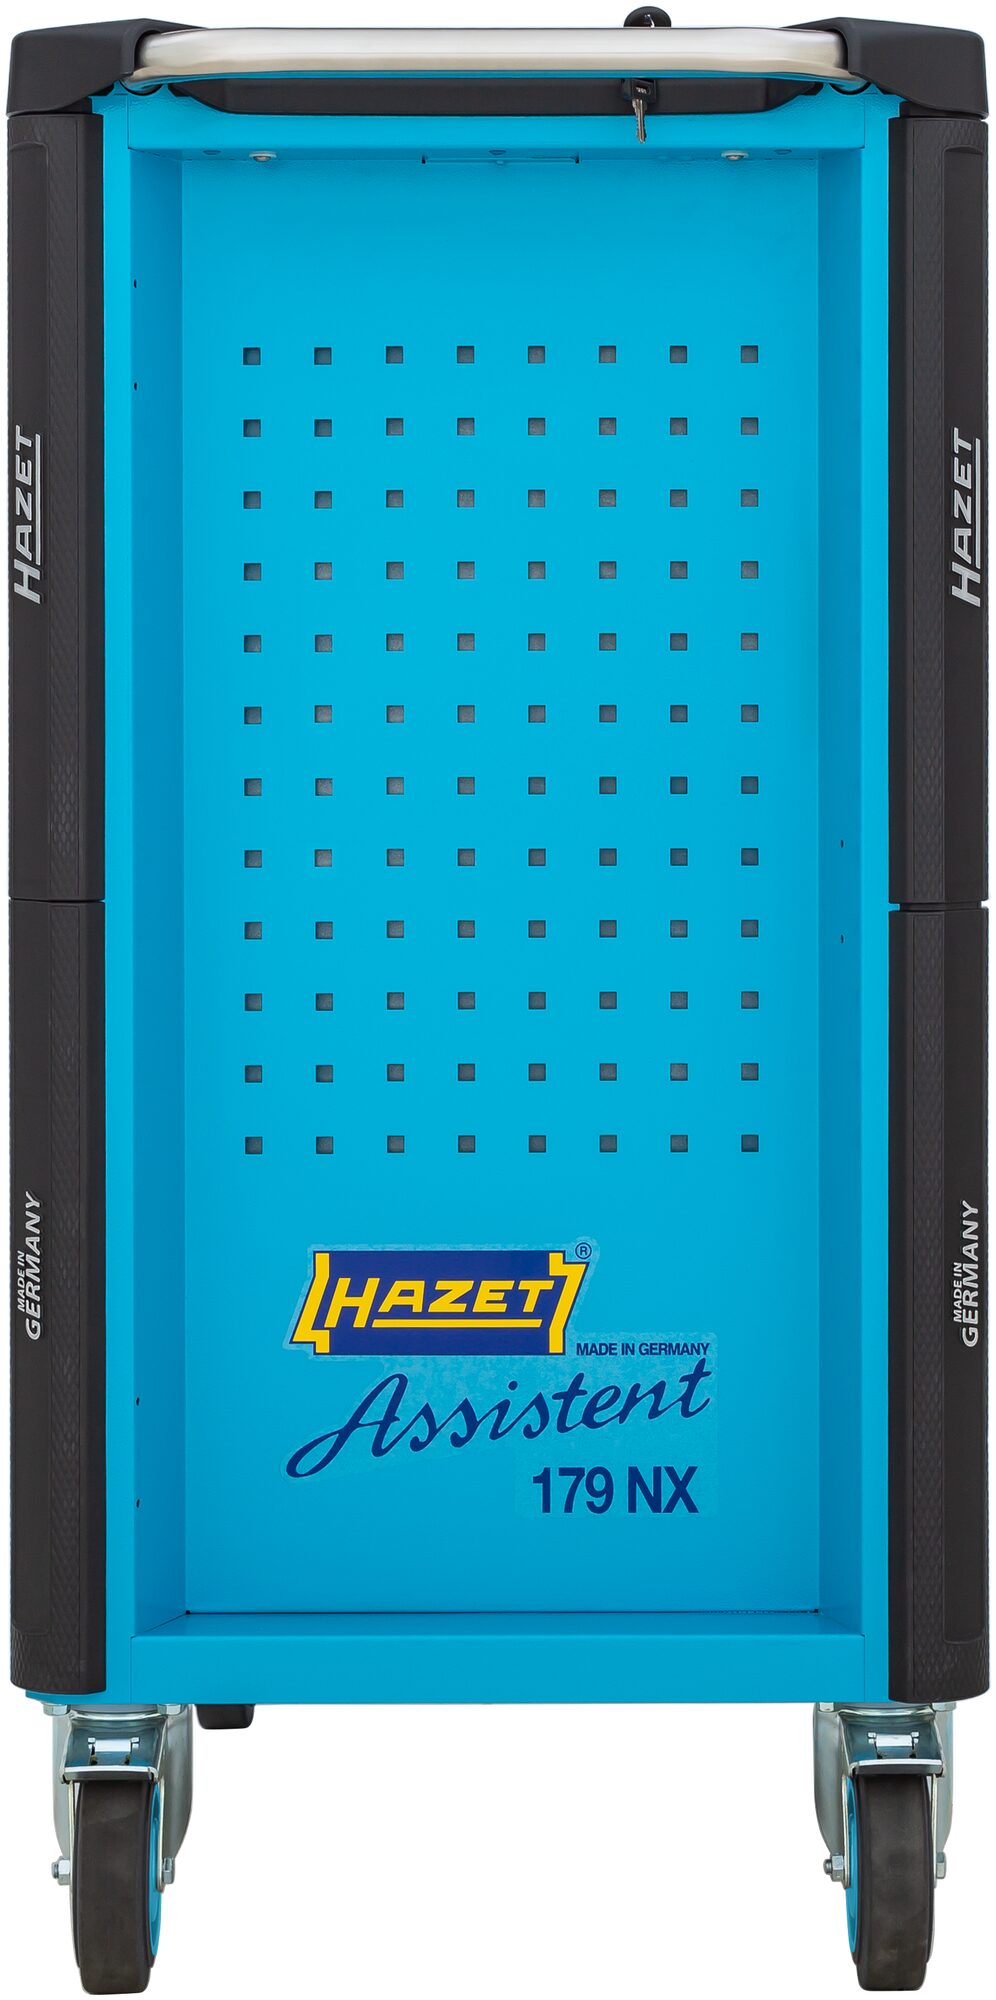 HAZET Werkstattwagen Assistent 179NX-8/252 · Werkzeuge: 252